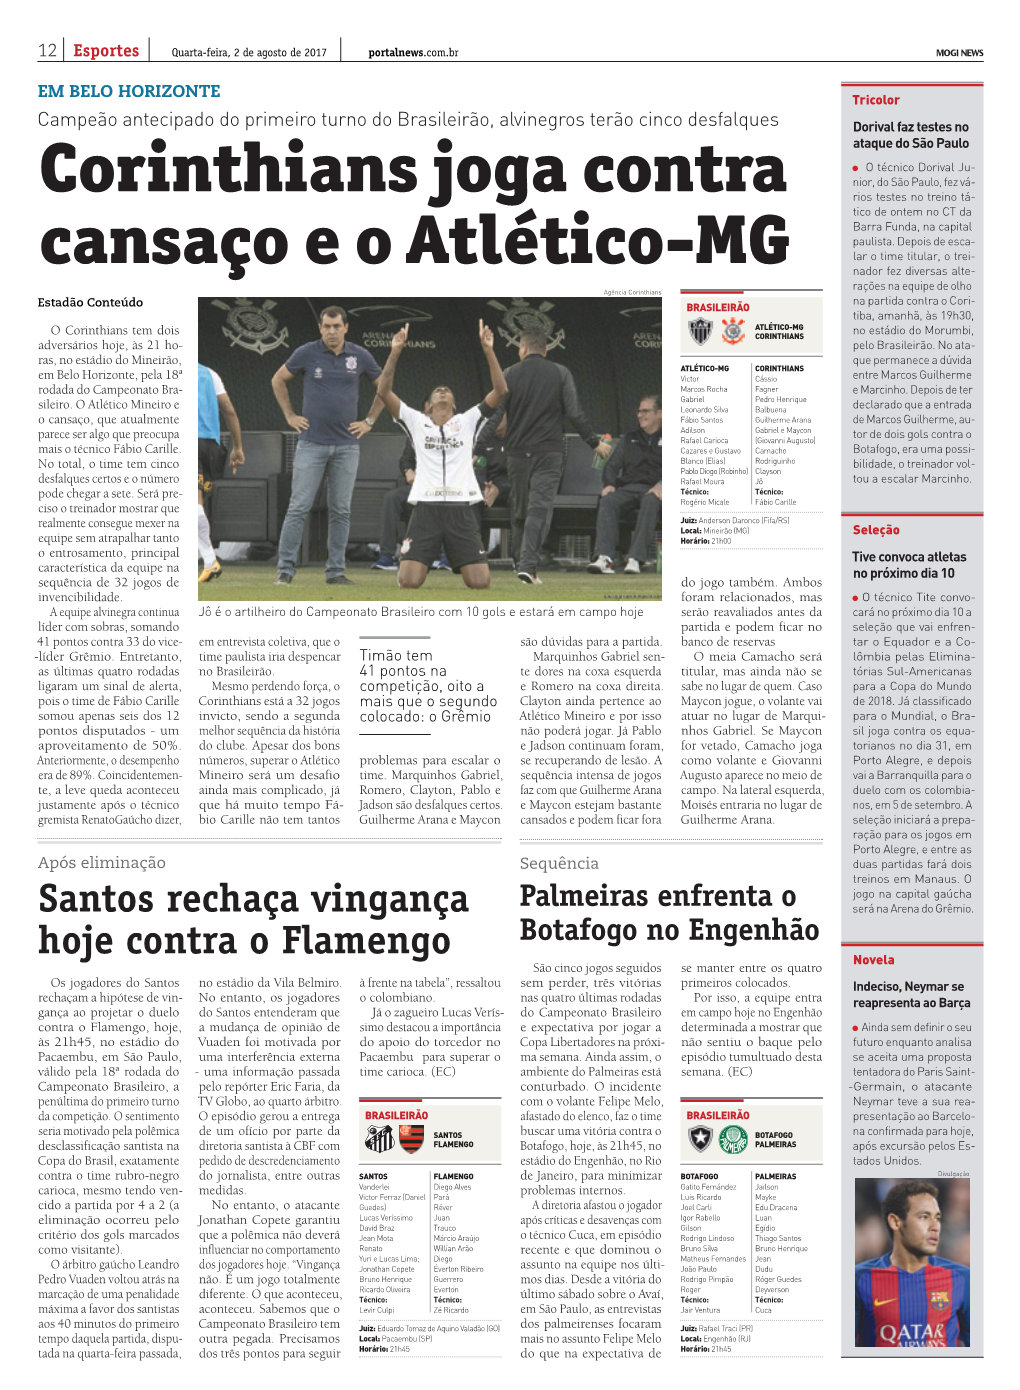 Corinthians Joga Contra Cansaço E O Atlético-MG